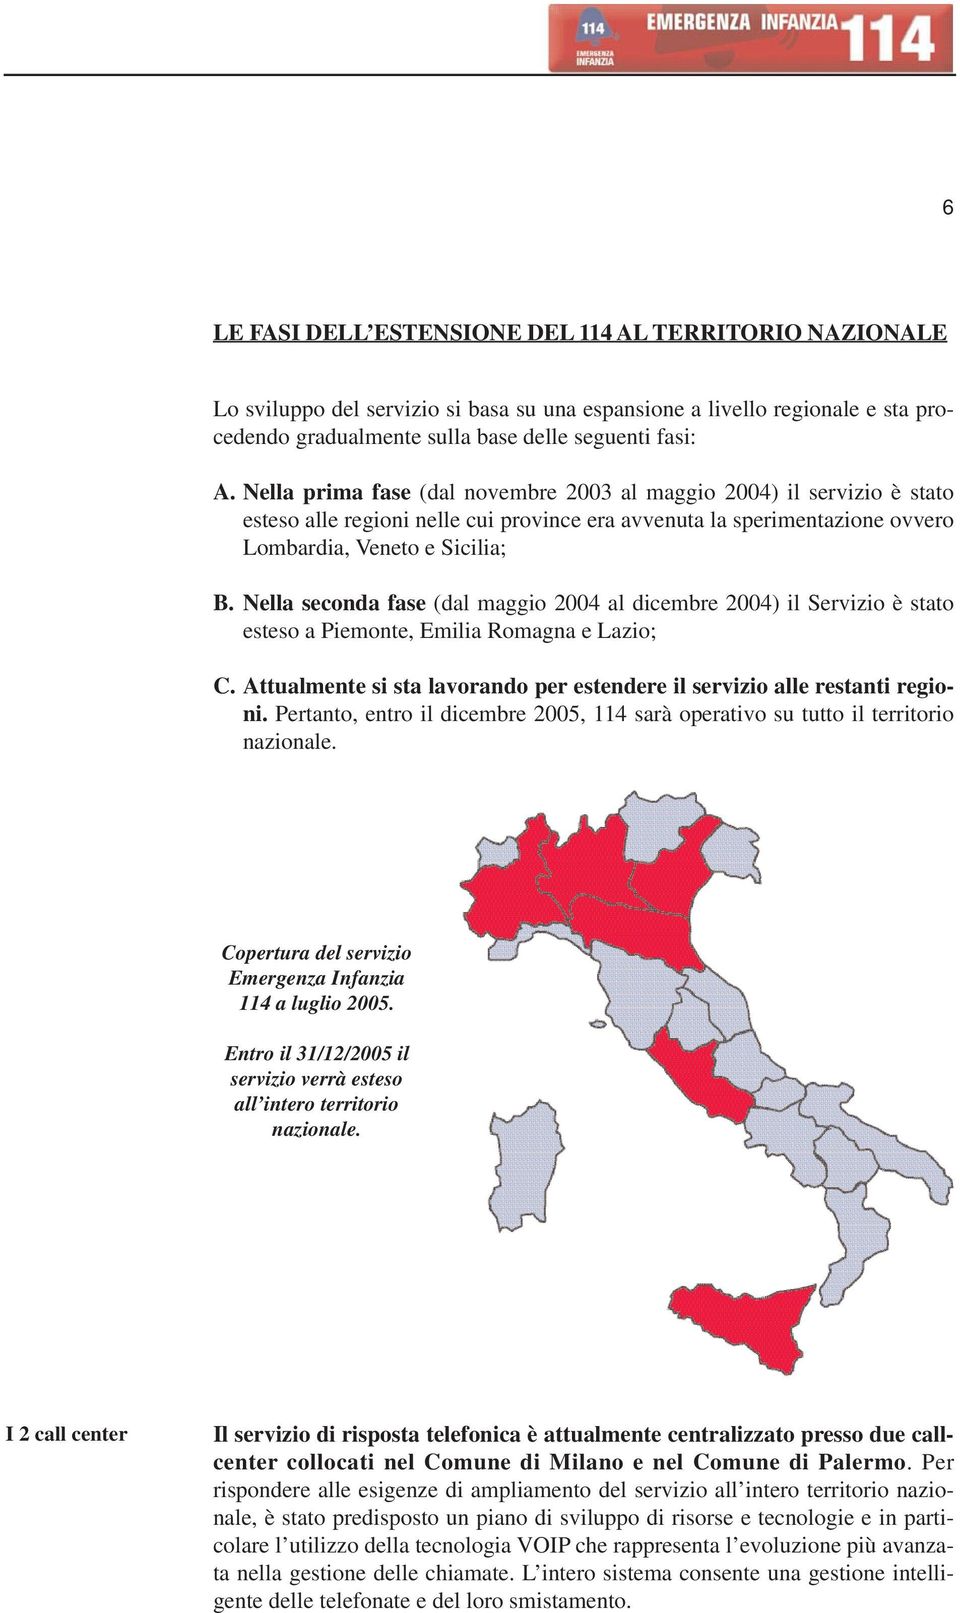 Nella seconda fase (dal maggio 2004 al dicembre 2004) il Servizio è stato esteso a Piemonte, Emilia Romagna e Lazio; C. Attualmente si sta lavorando per estendere il servizio alle restanti regioni.